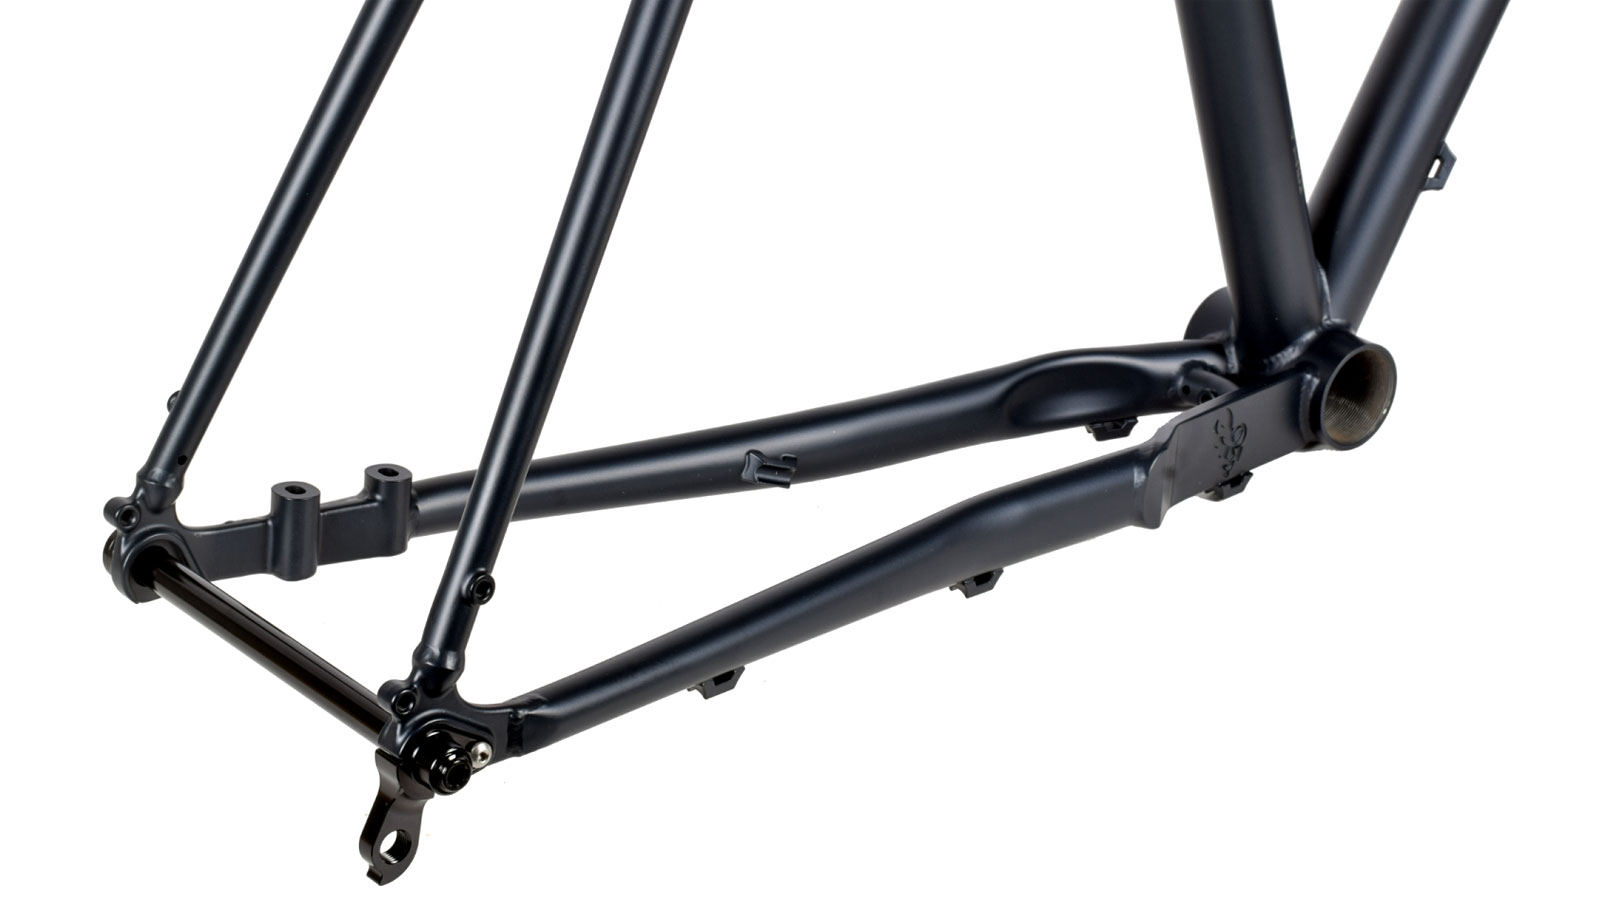 Nordest Albarda 2 steel gravel bike, affordable 4130 chromoly adventure gravel bike, chainstay detail